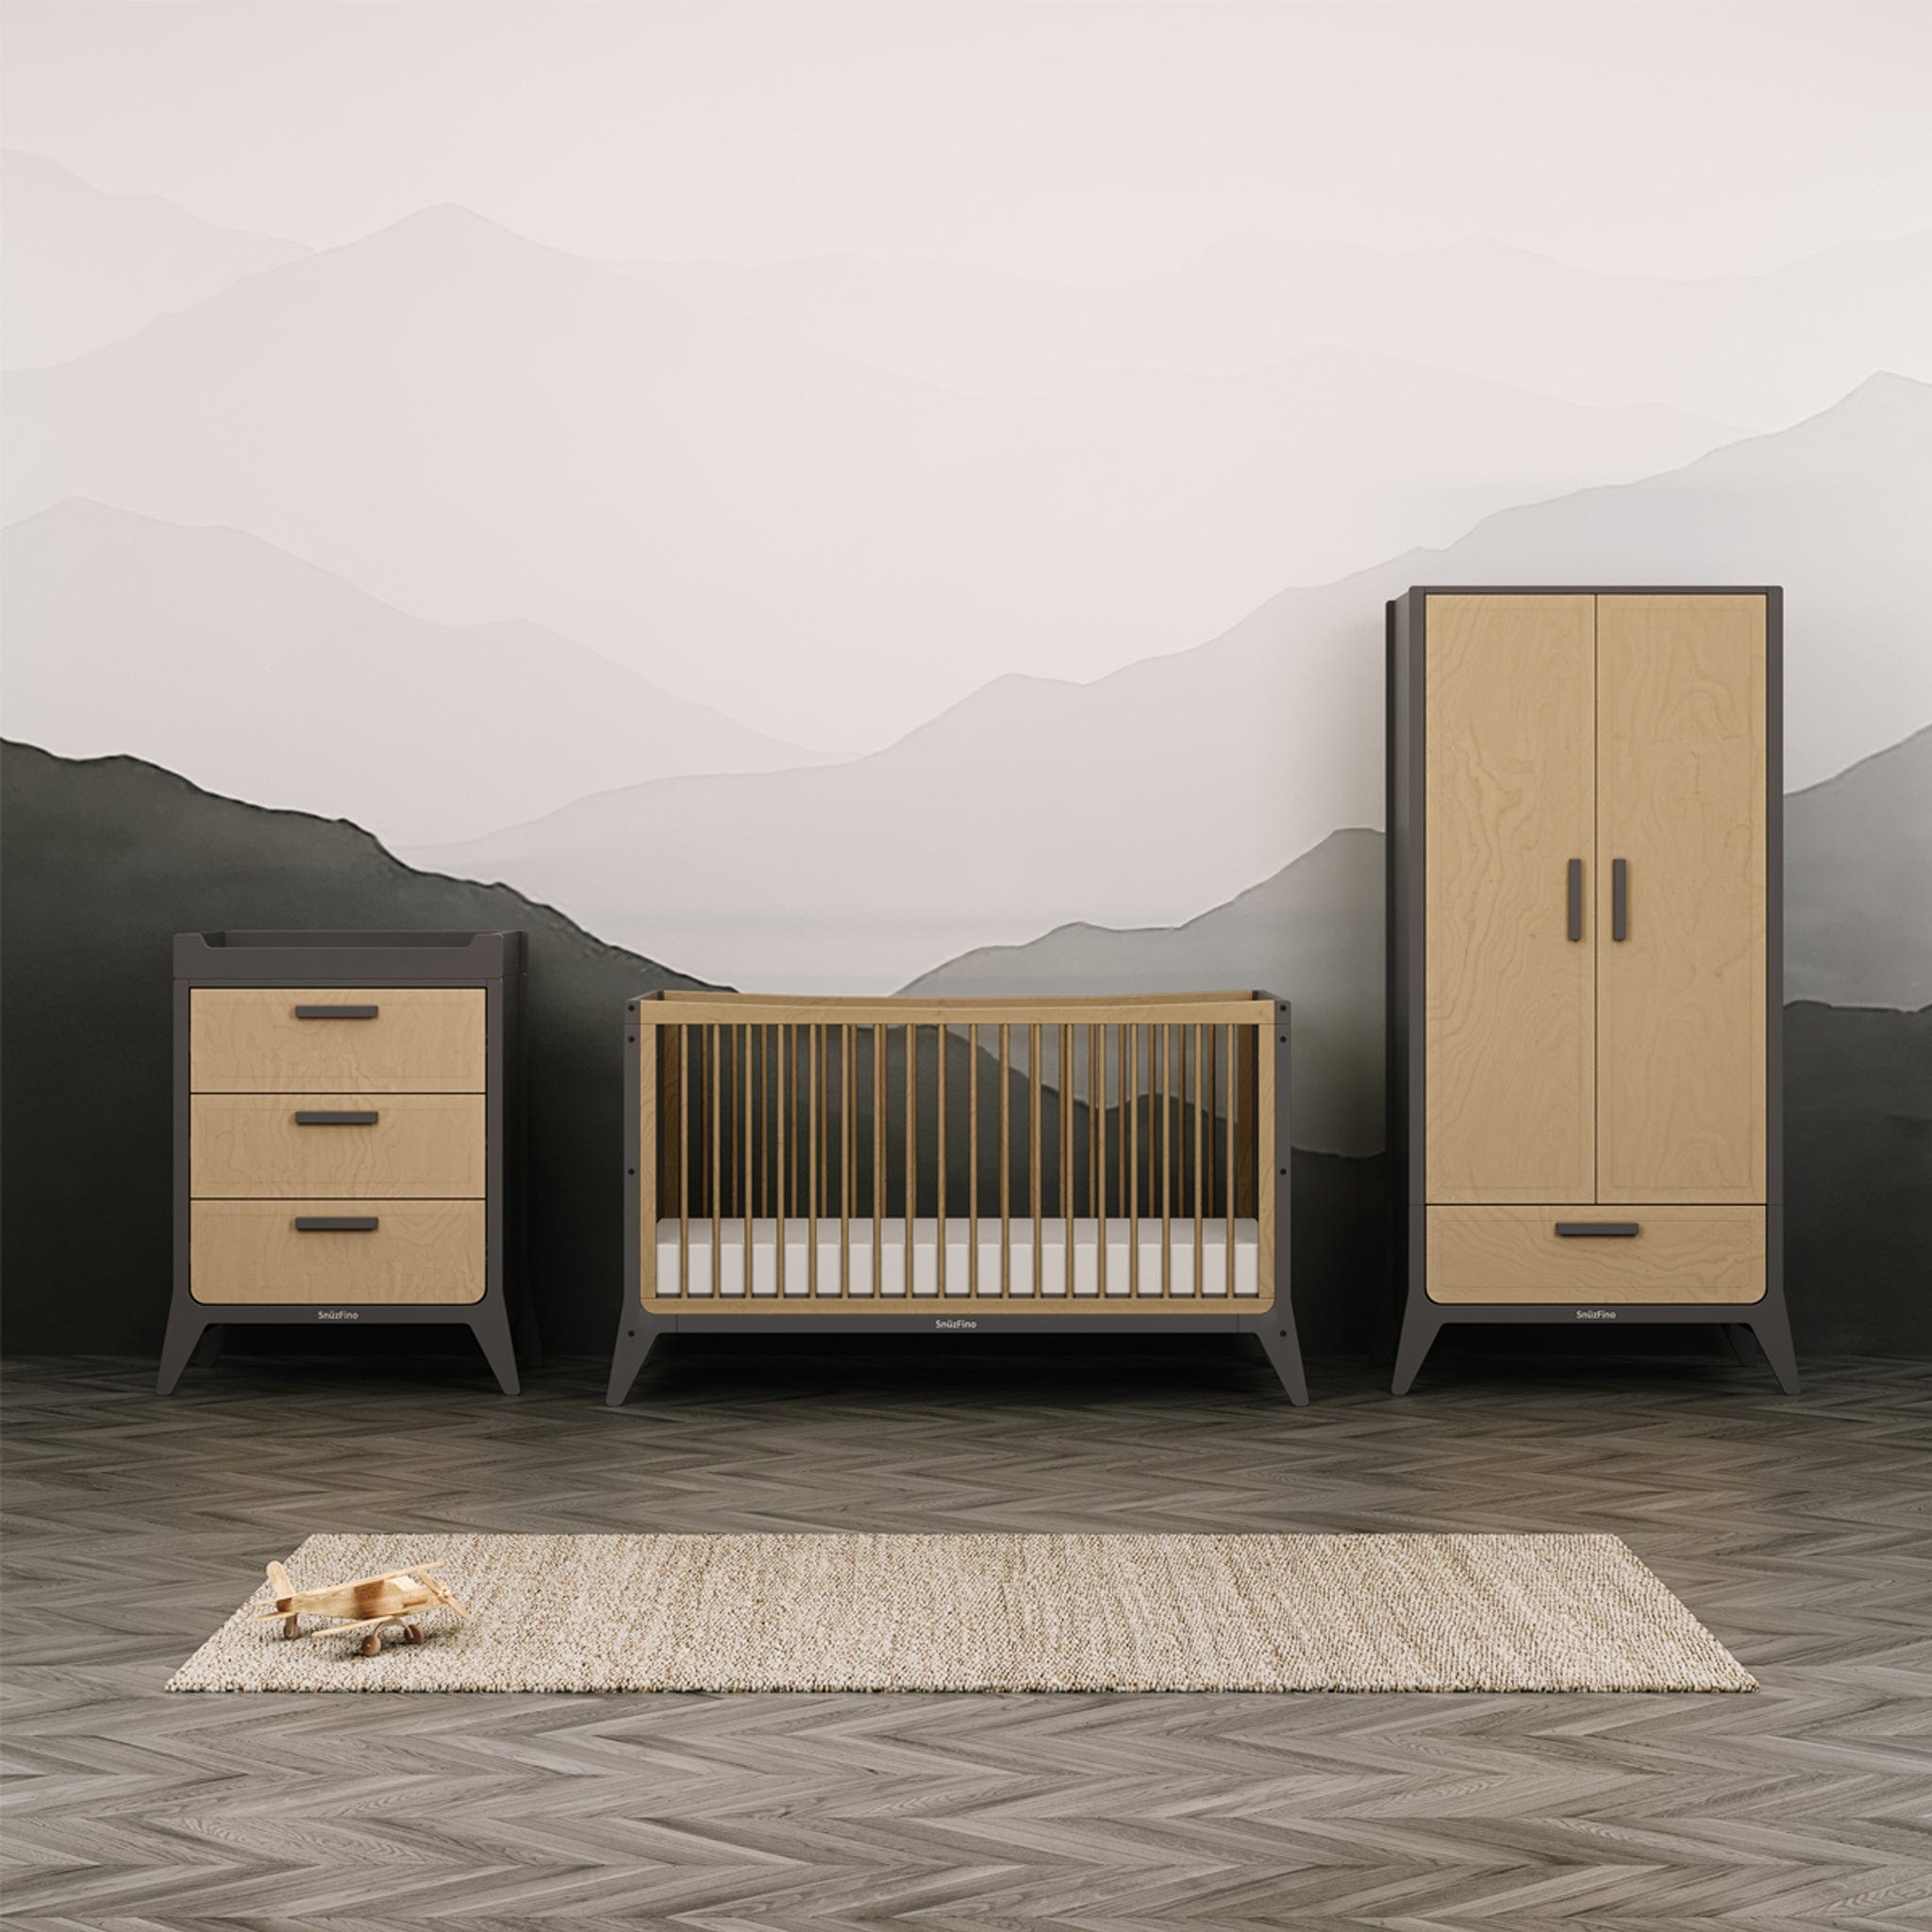 SnuzFino 3 Piece Nursery Furniture Set in Slate Nursery Room Sets